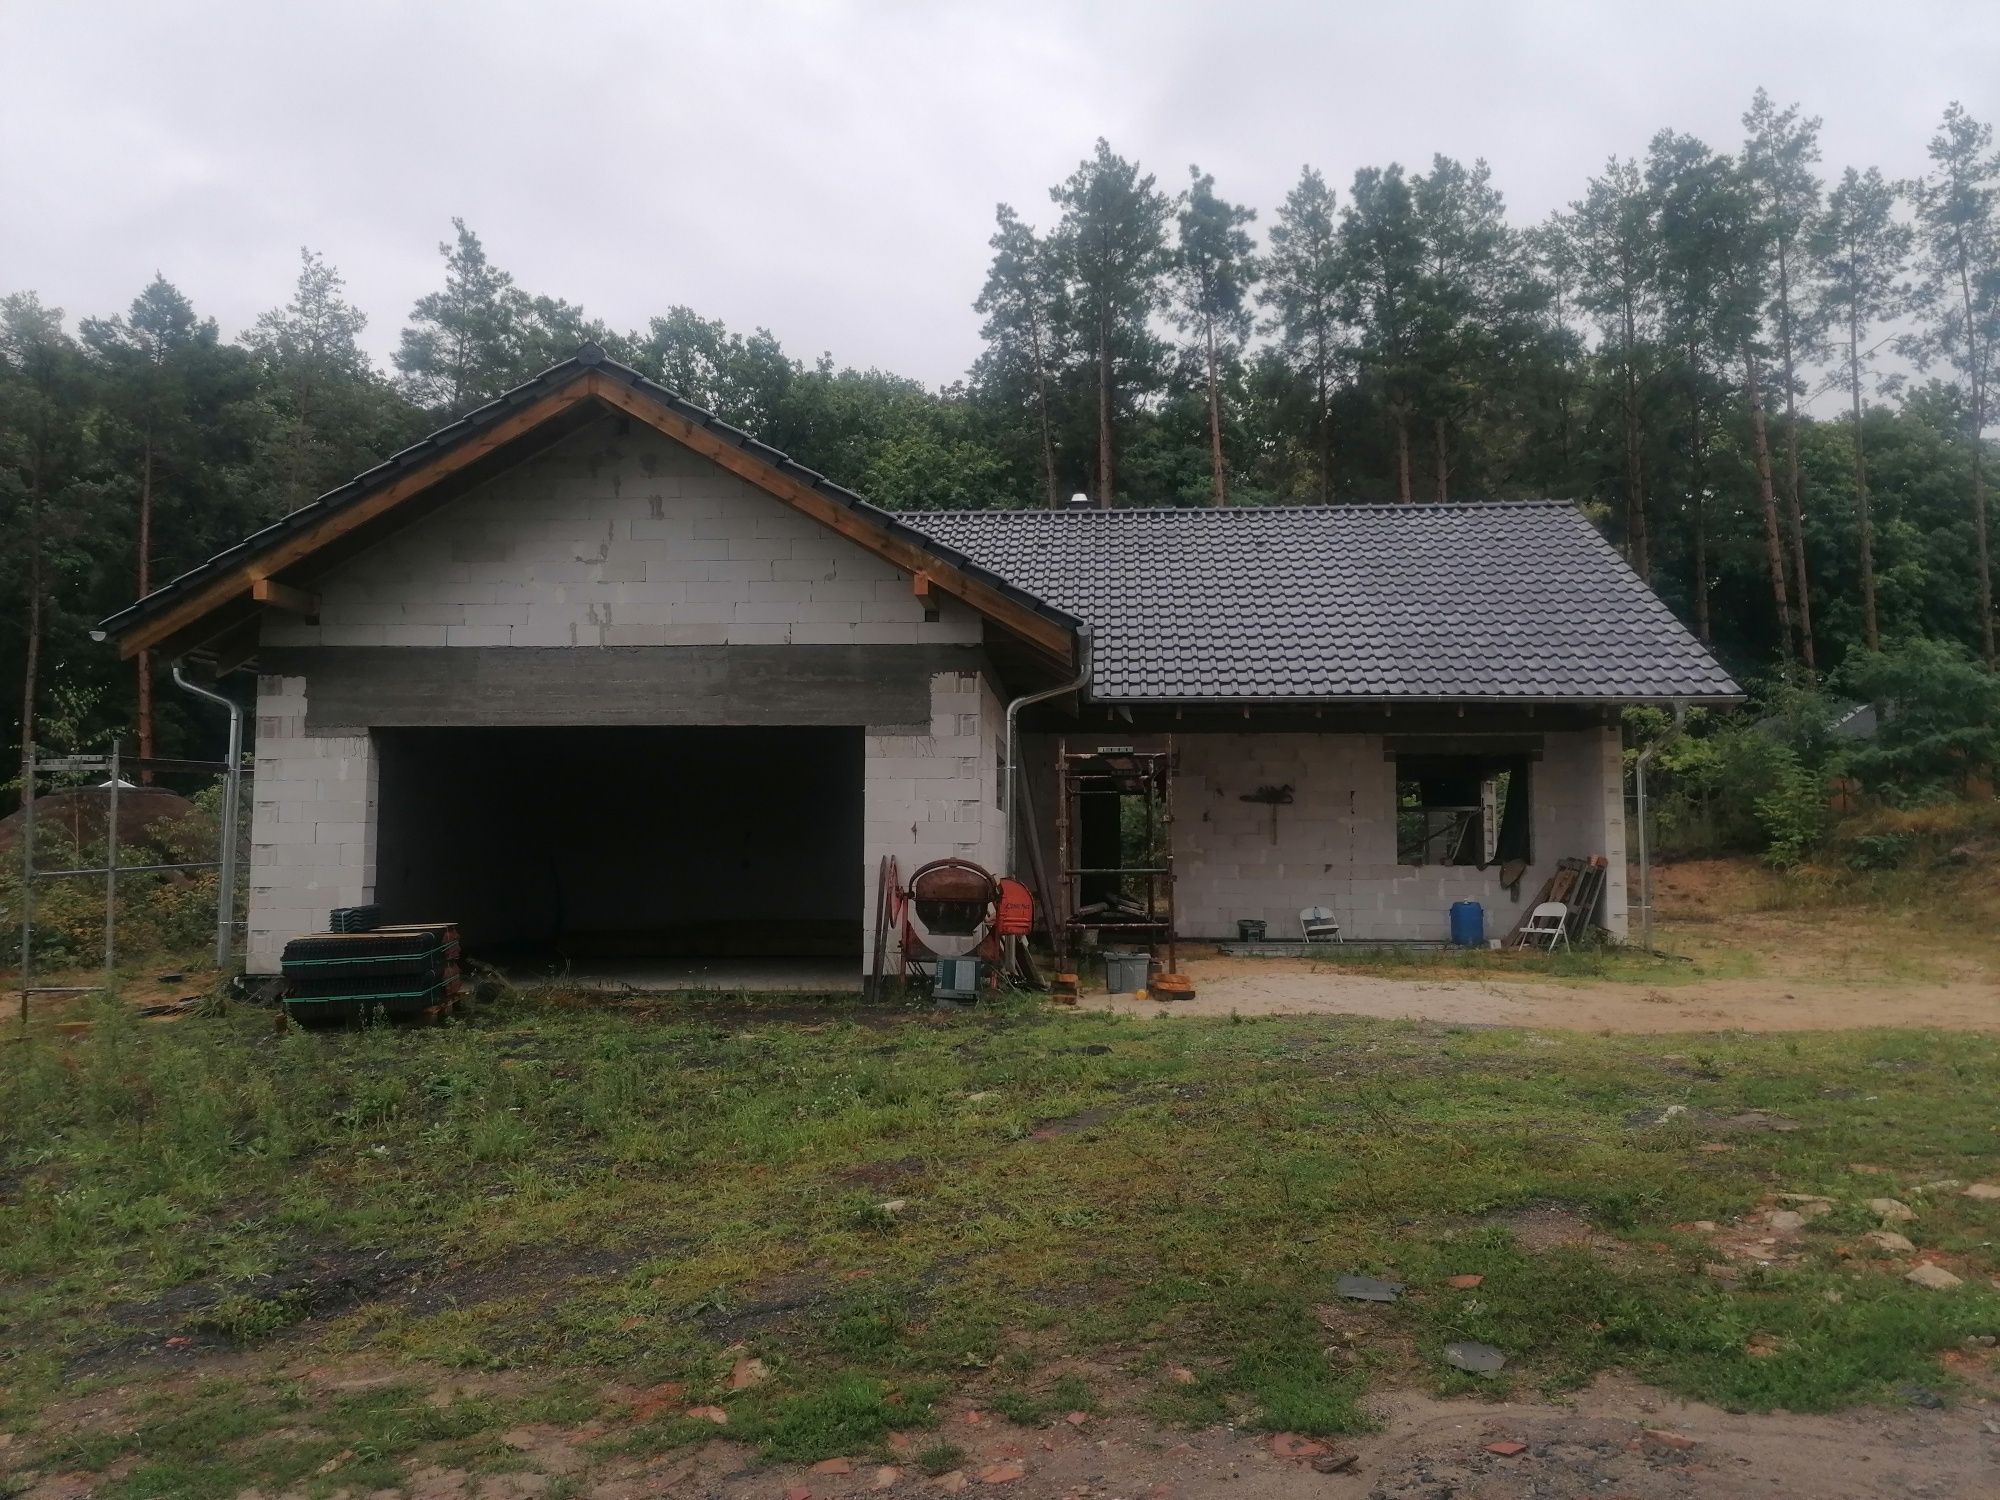 Działka budowlana w Przytoku z rozpoczętą budową domu dom w przytoku